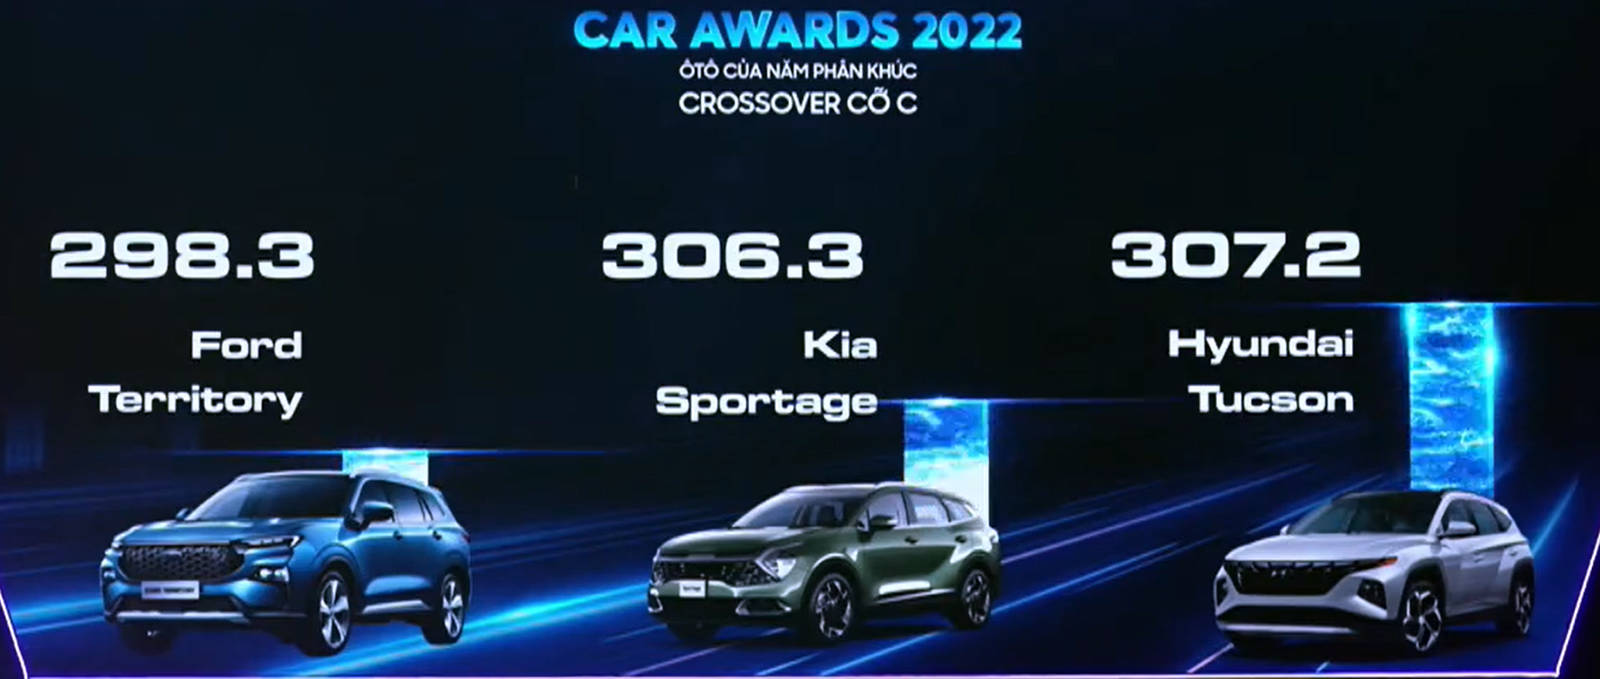 car-awards2022-02.jpg